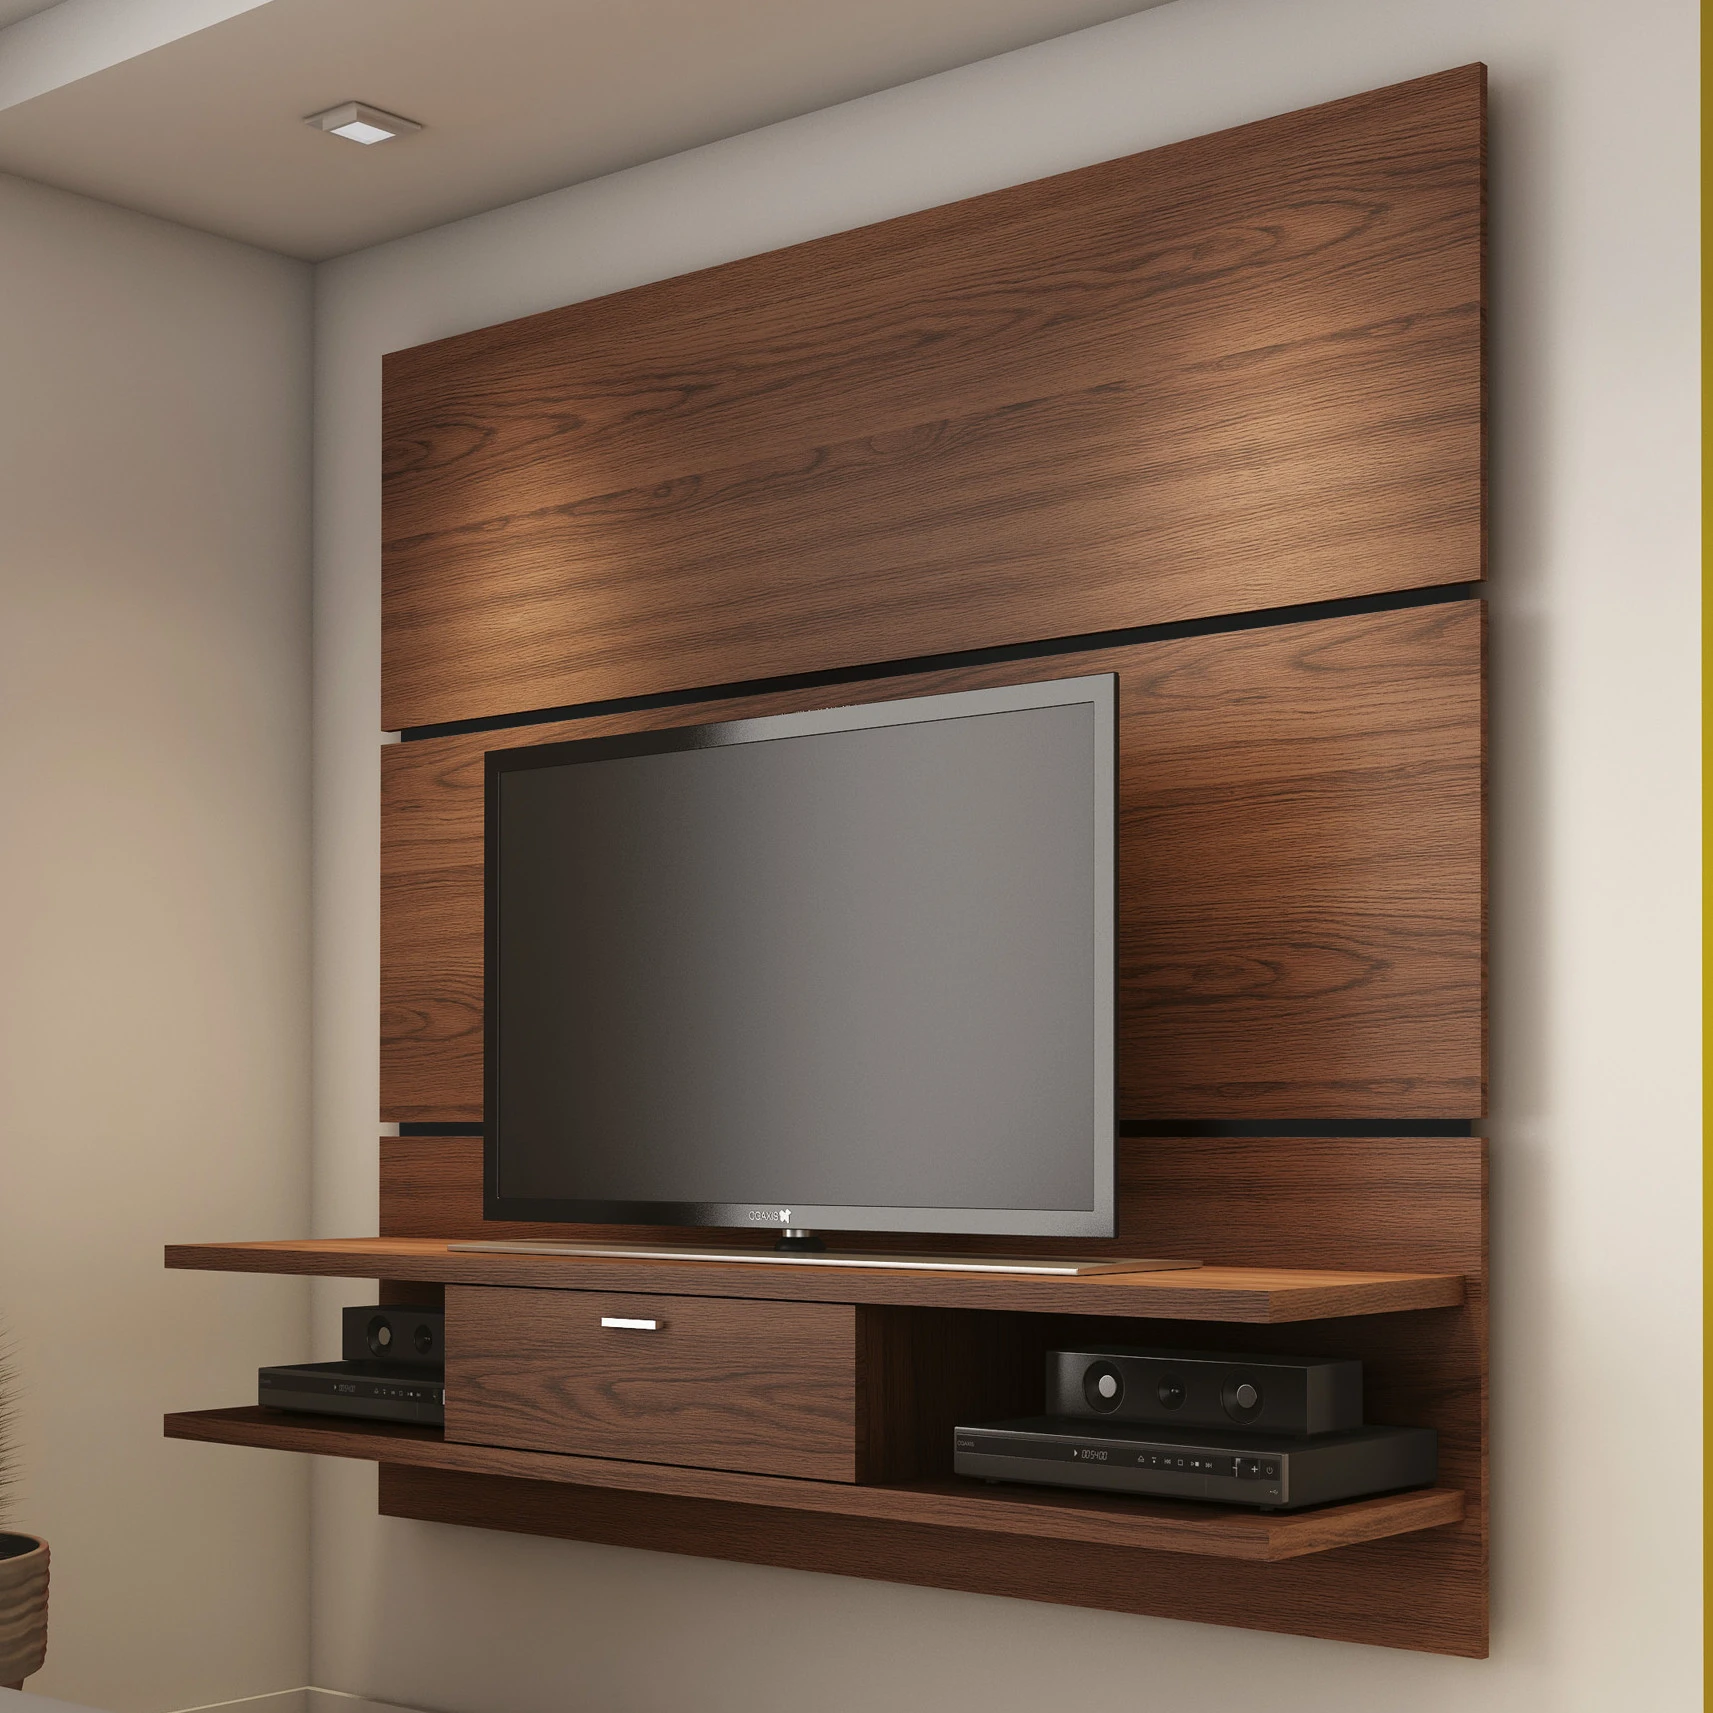 Steigender Tv schrank Für Unter Fernseher 20 Zoll Für Moderne Wohnung   Buy  Tv Cabinet 20 Inch,Cabinet For Under Tv,Rising Tv Cabinet Product on ...